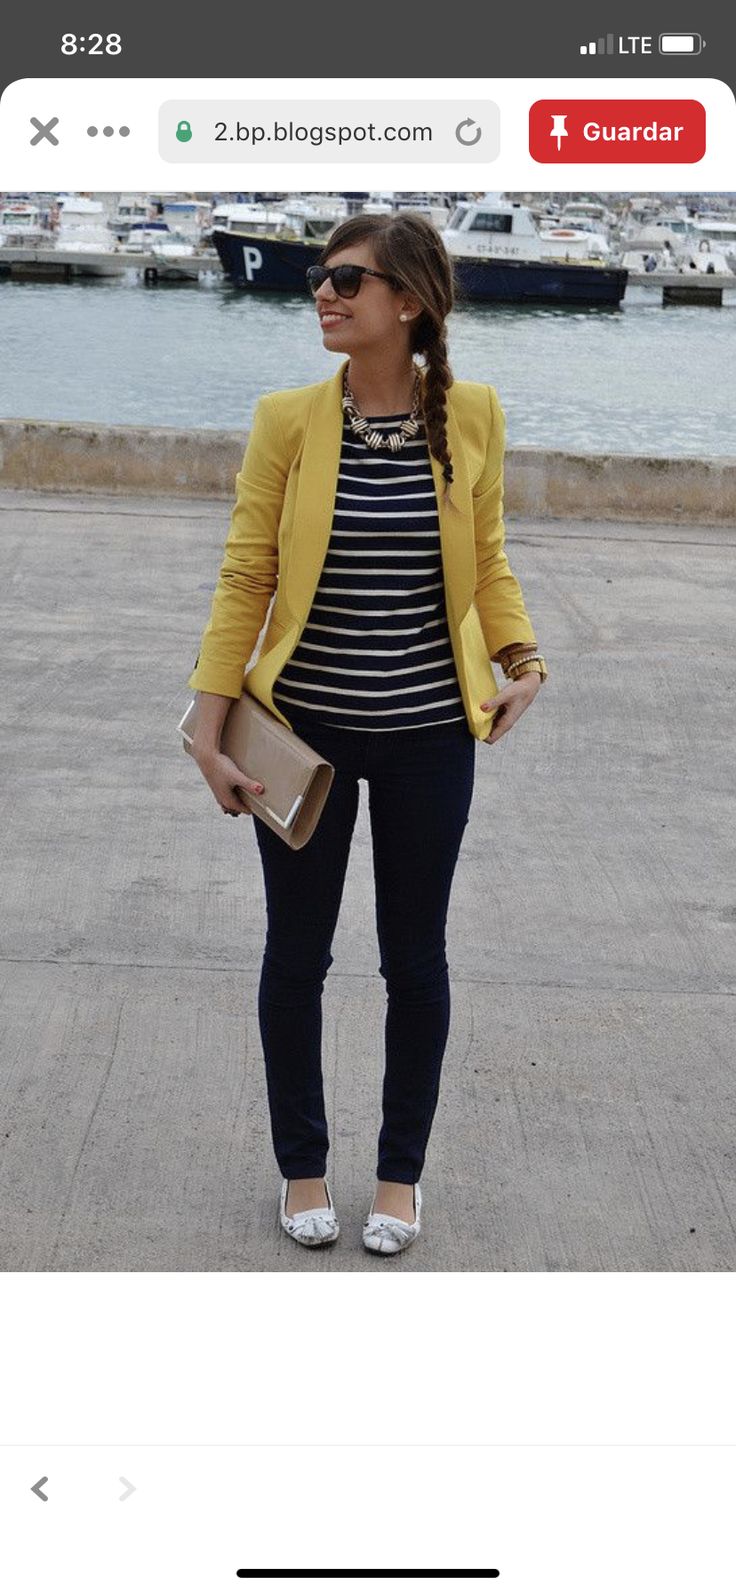 желтый пиджак с чем носить женщины фото